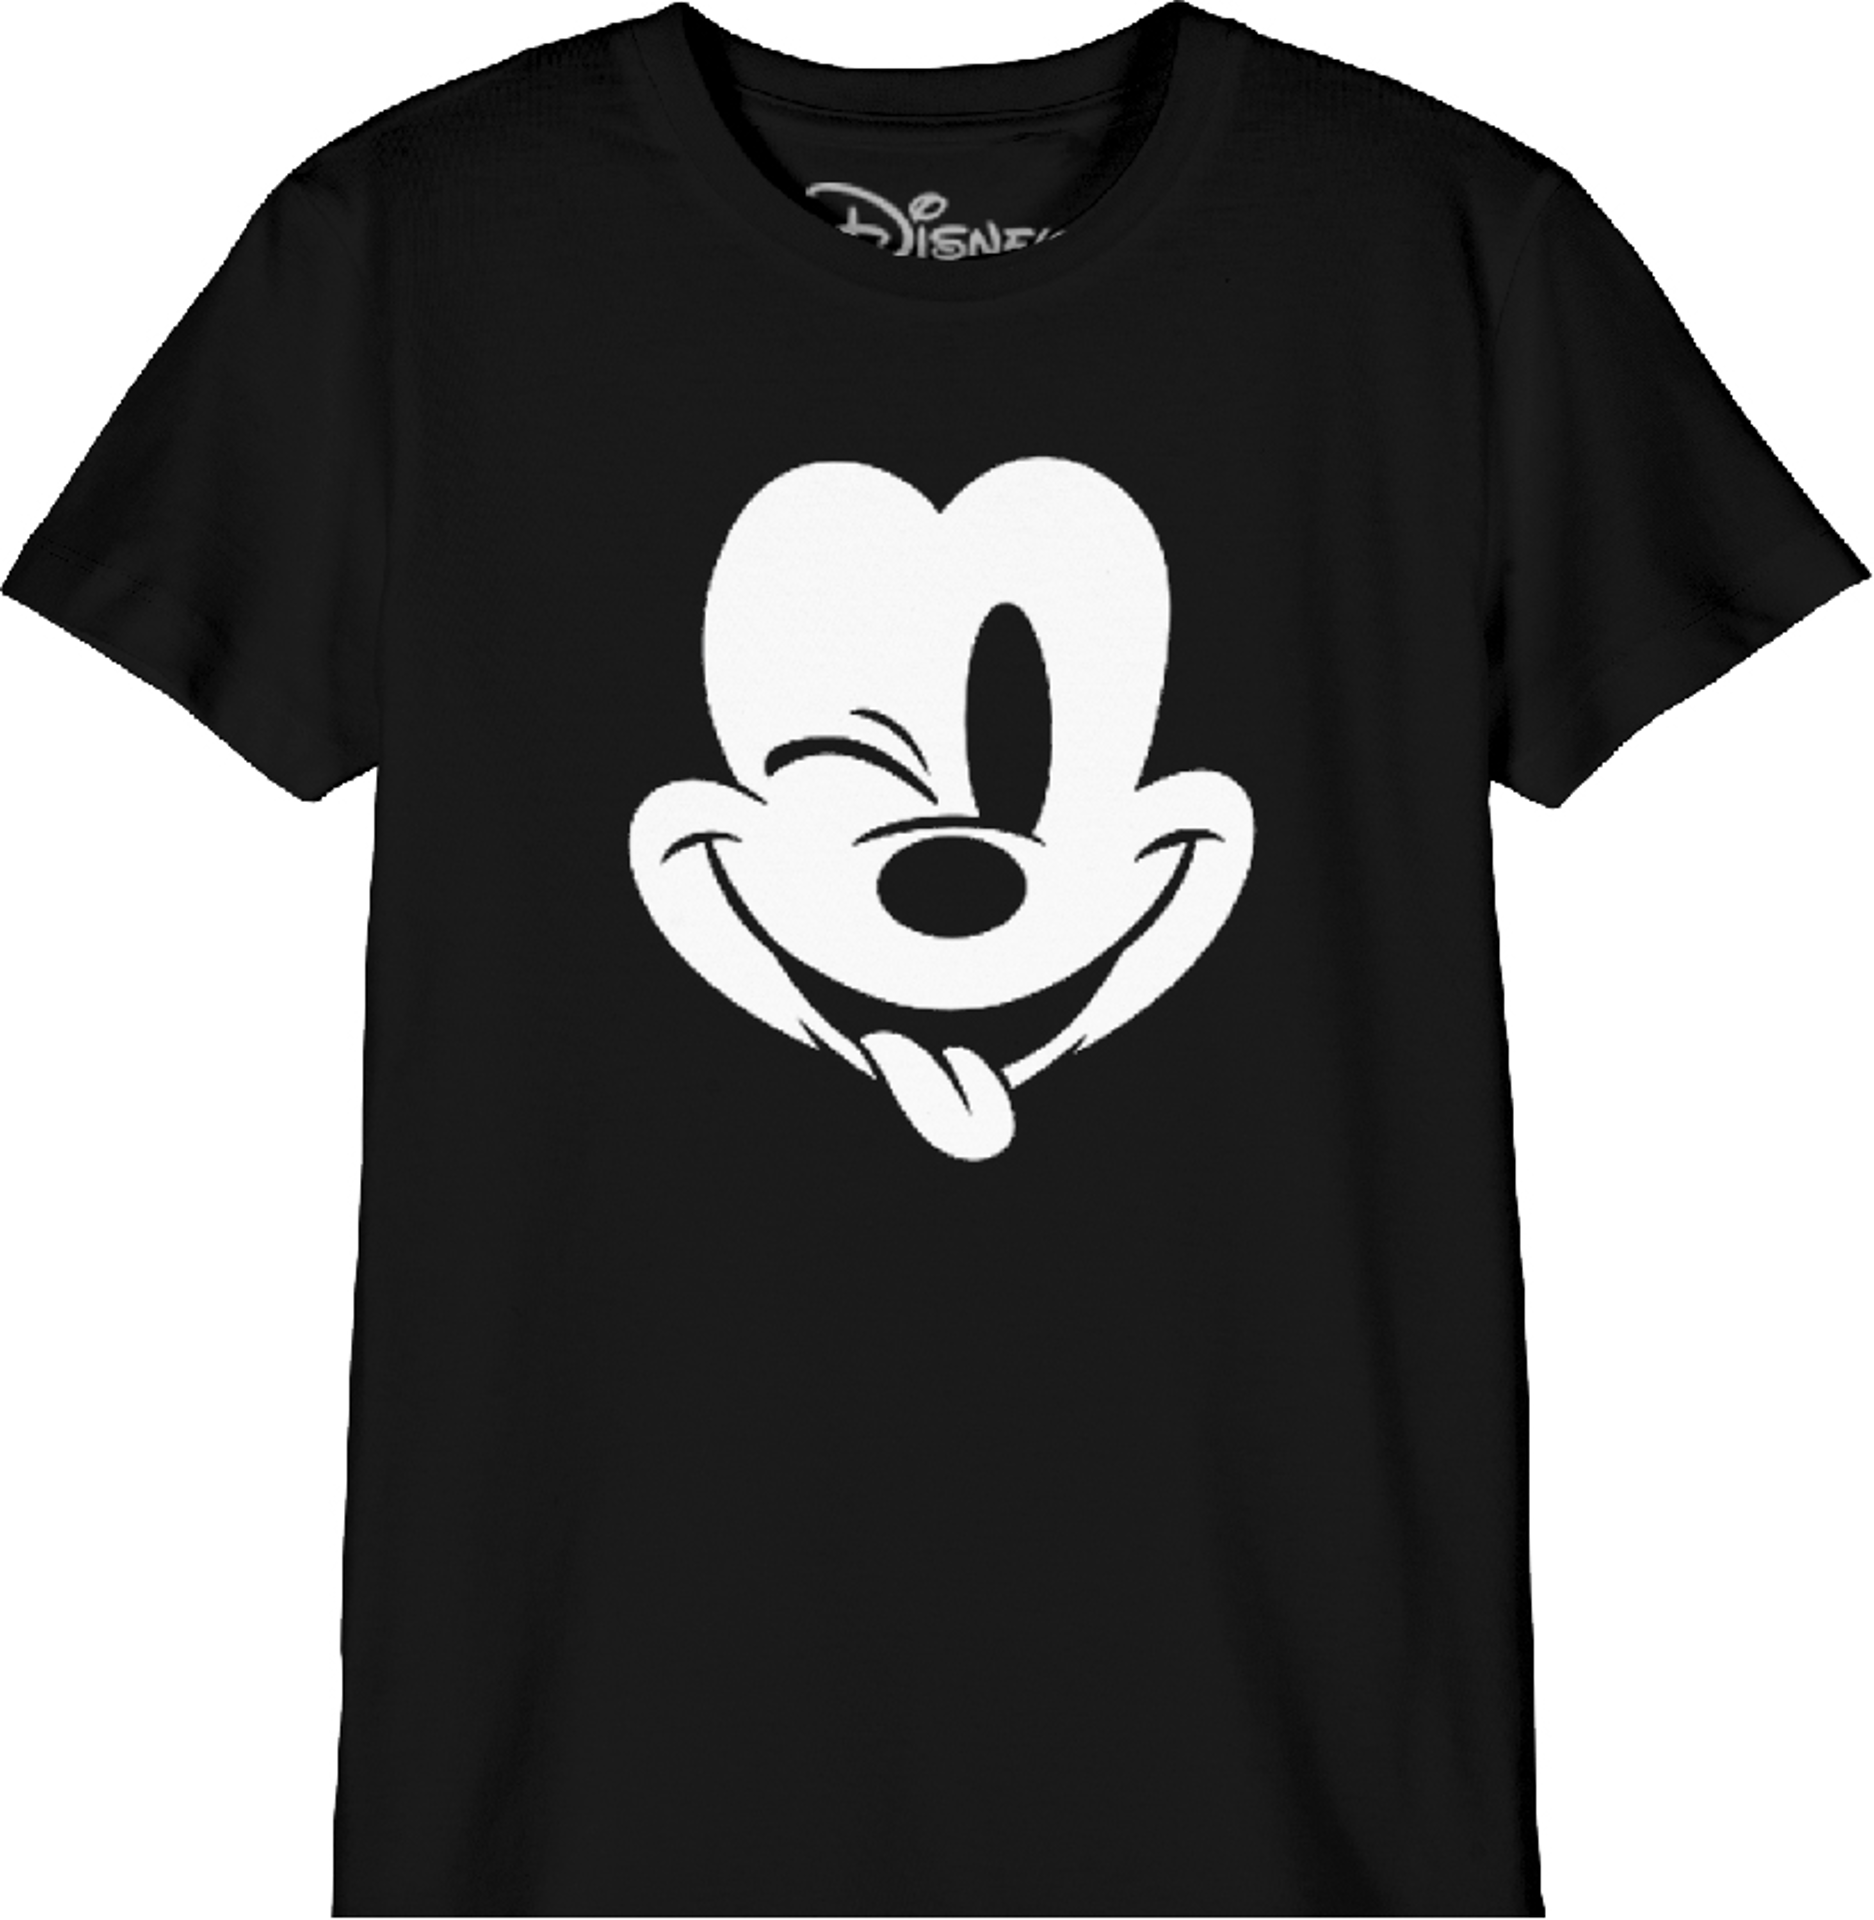 Disney - T-Shirt Noir Enfant Mickey Mouse faisant un clin d'oeil - 6 ans